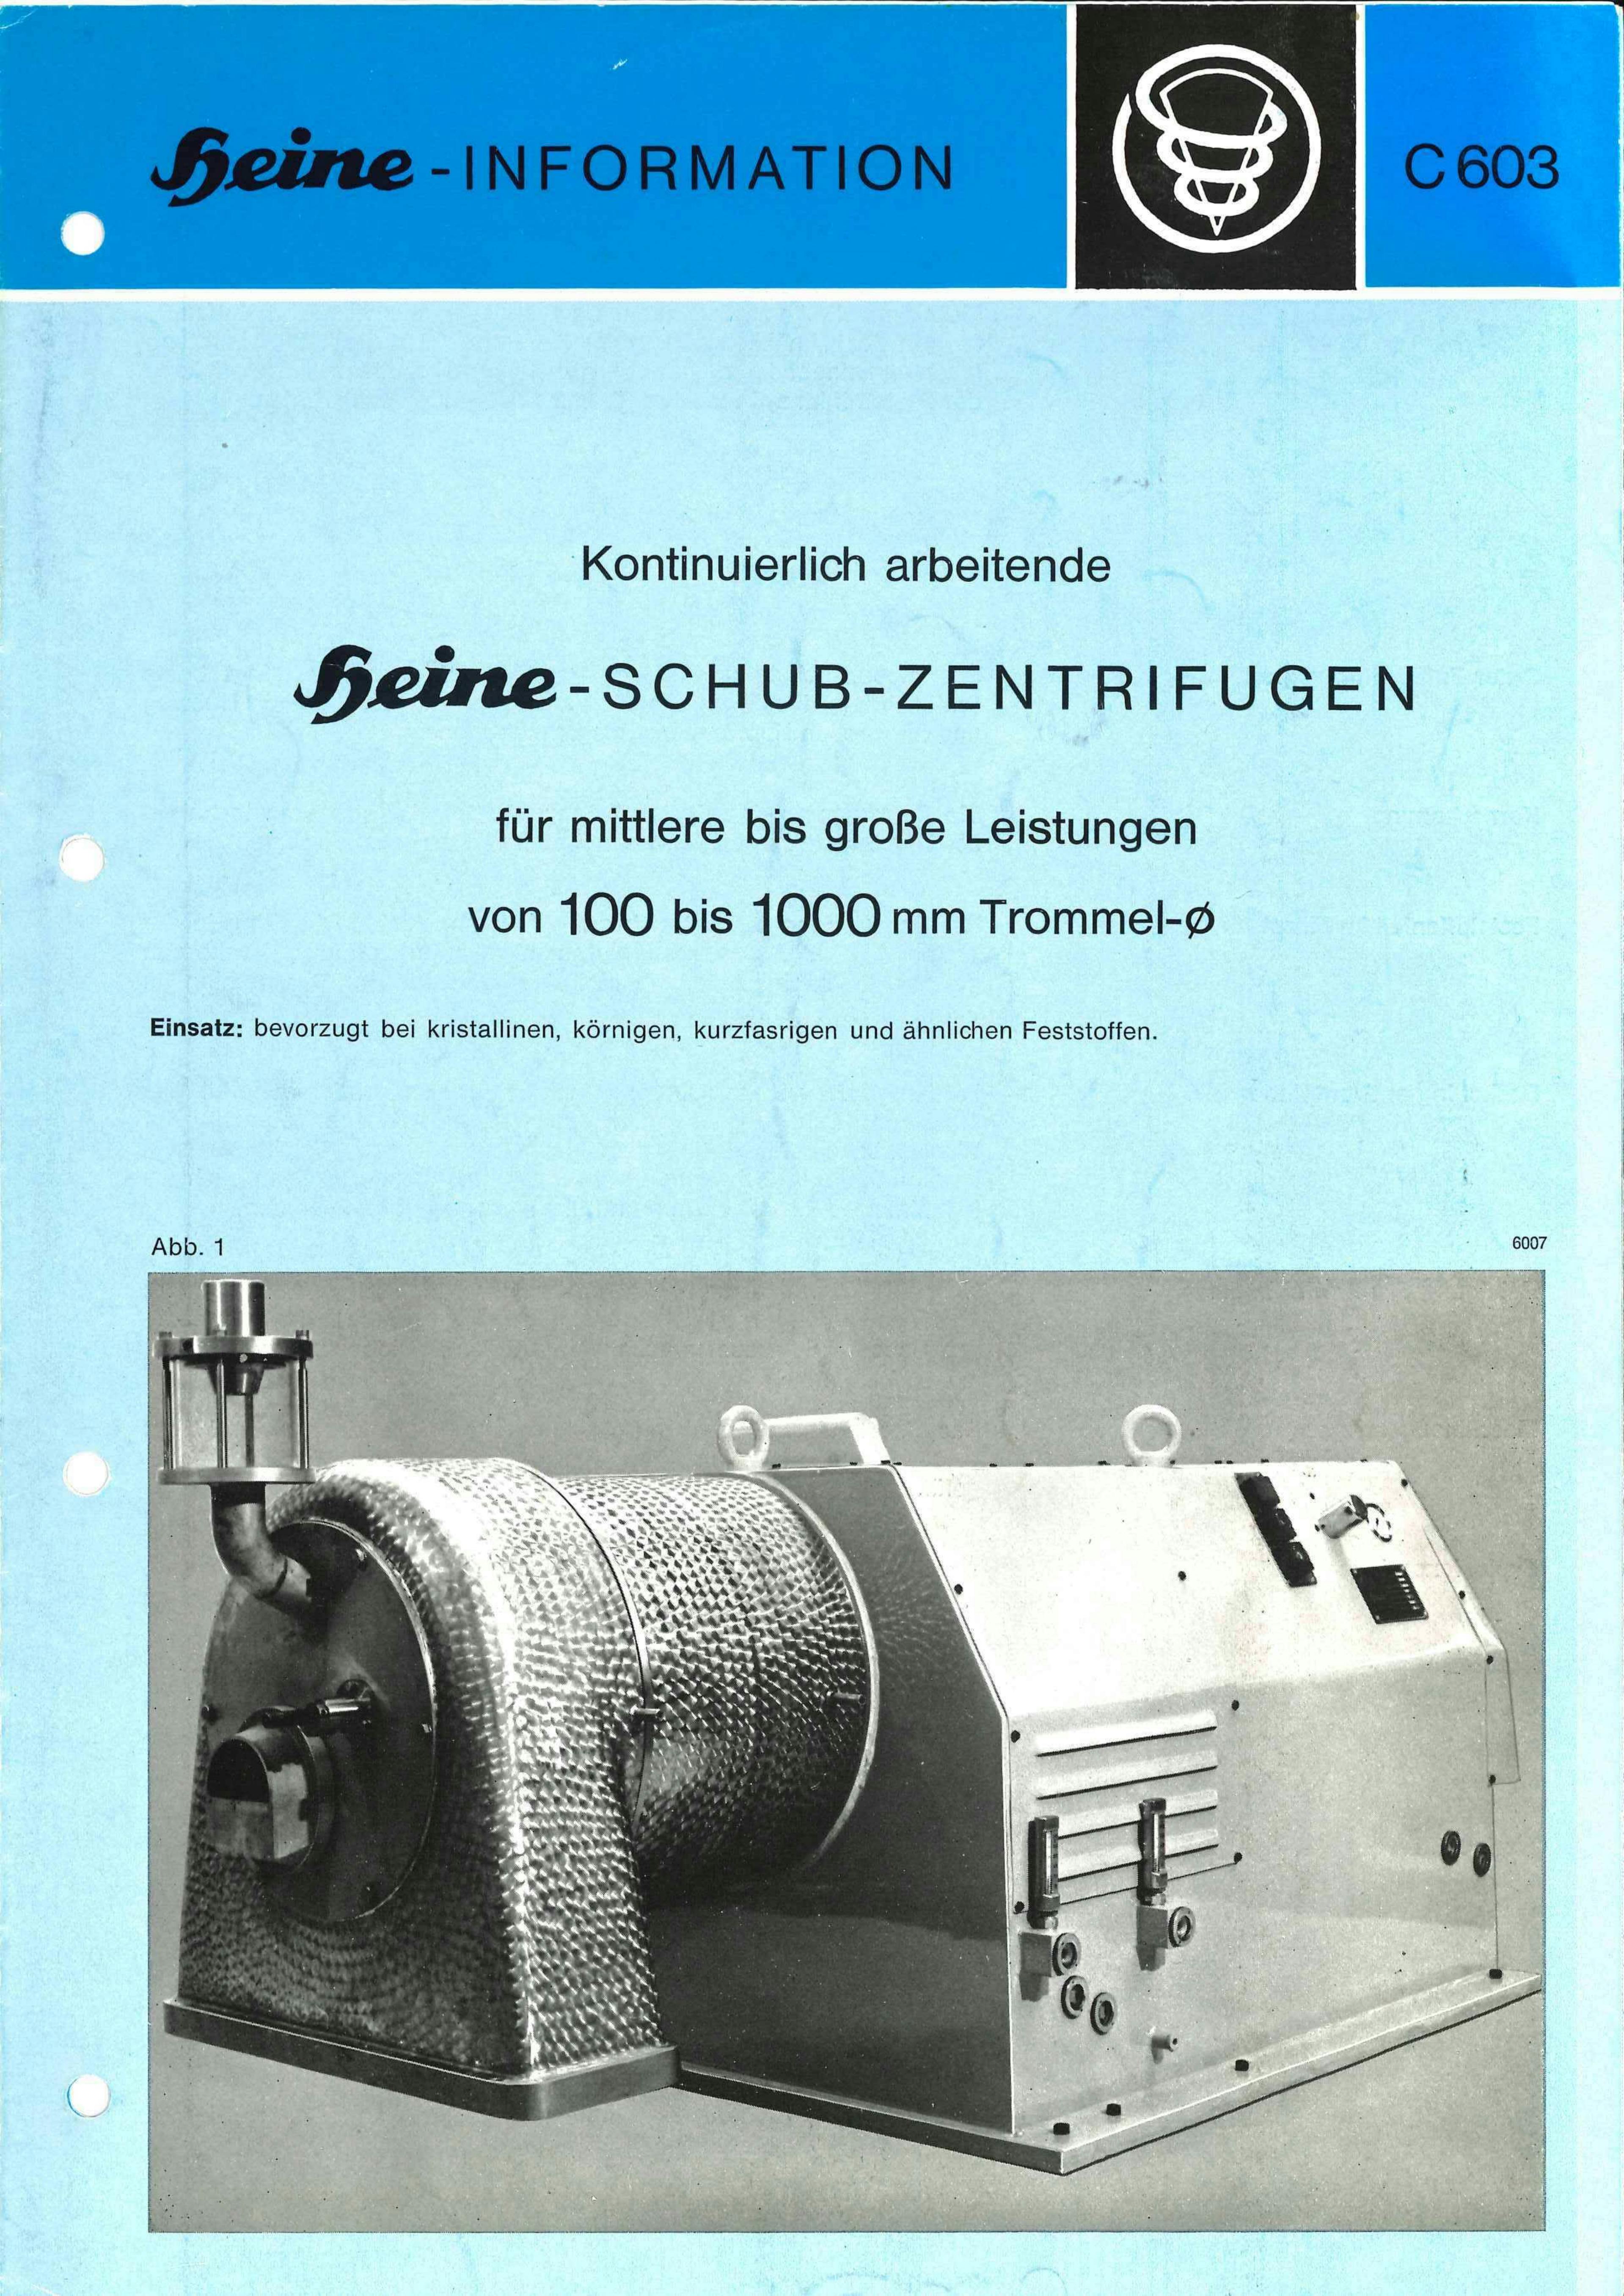 Heine Zentrifug 606 - Schubzentrifuge - image 12